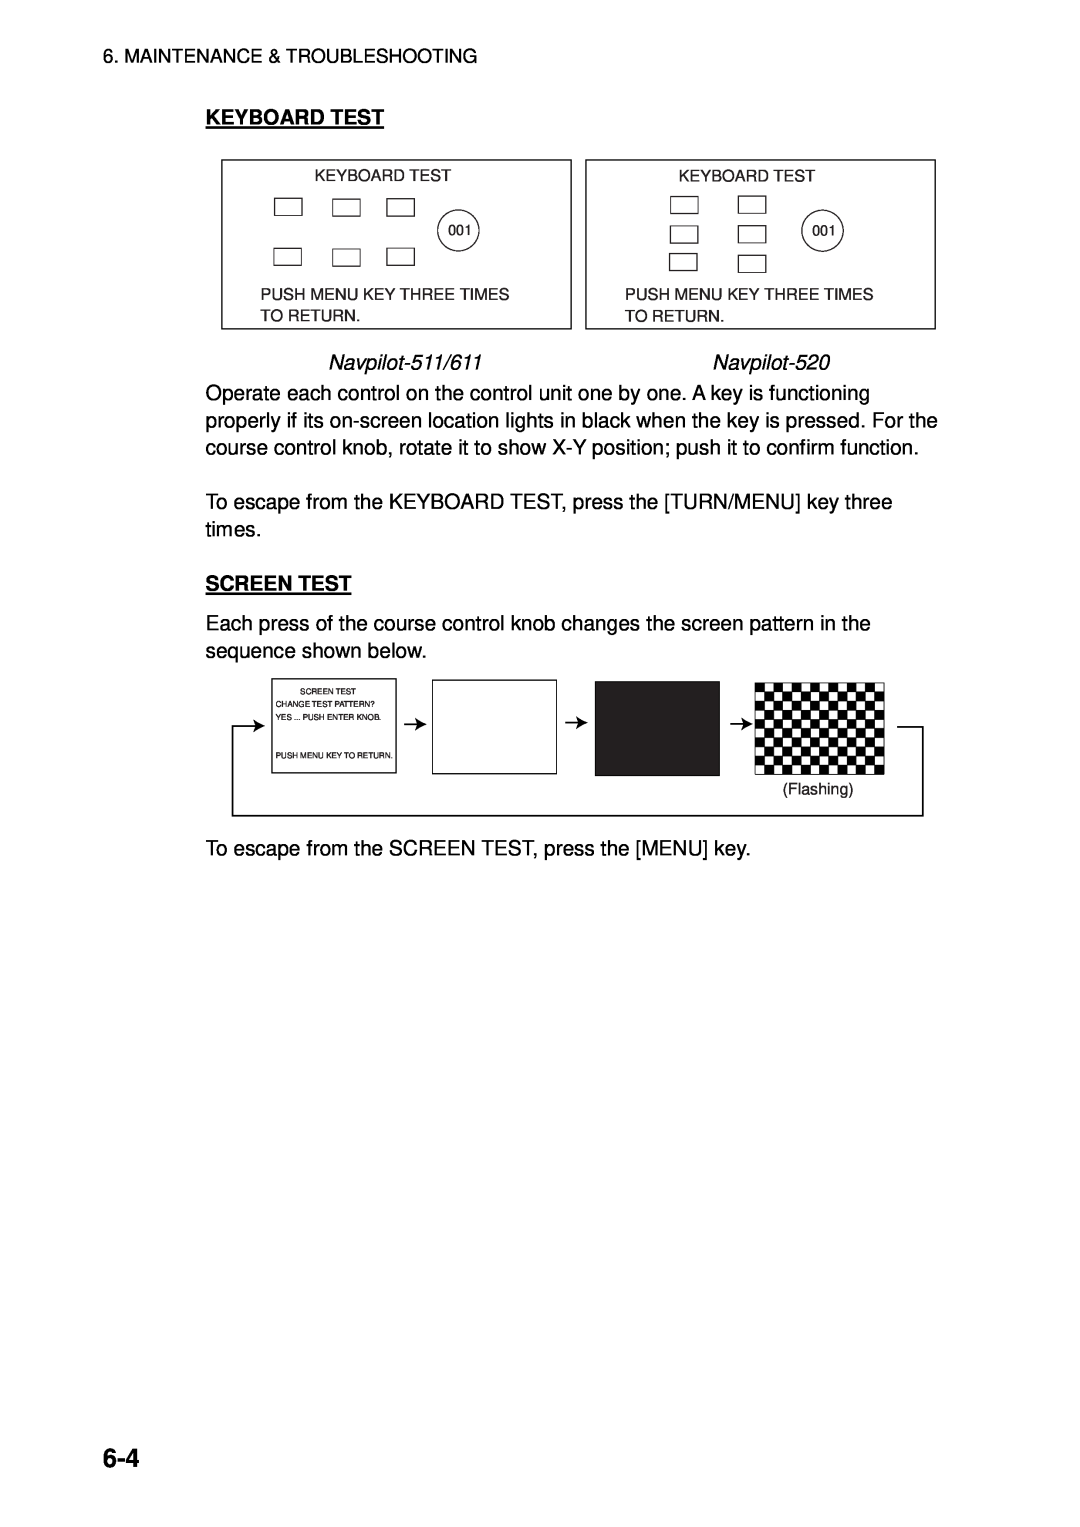 Furuno manual Keyboard Test, Navpilot-511/611, Navpilot-520, Screen Test 